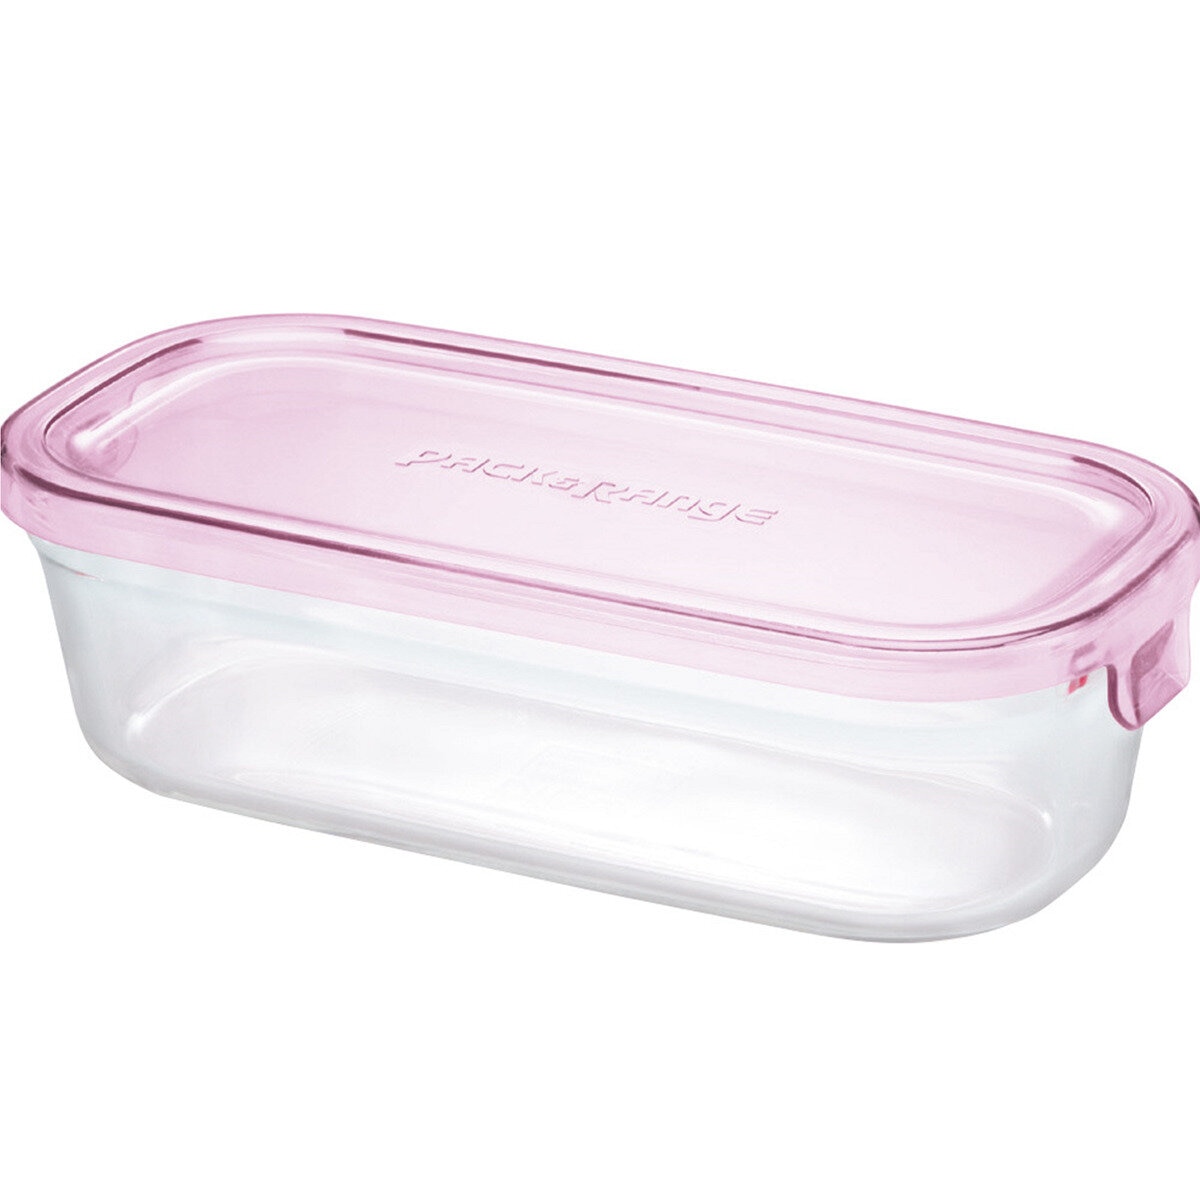 イワキ パック&レンジ 500ml 耐熱ガラス保存容器 ピンク | Costco Japan